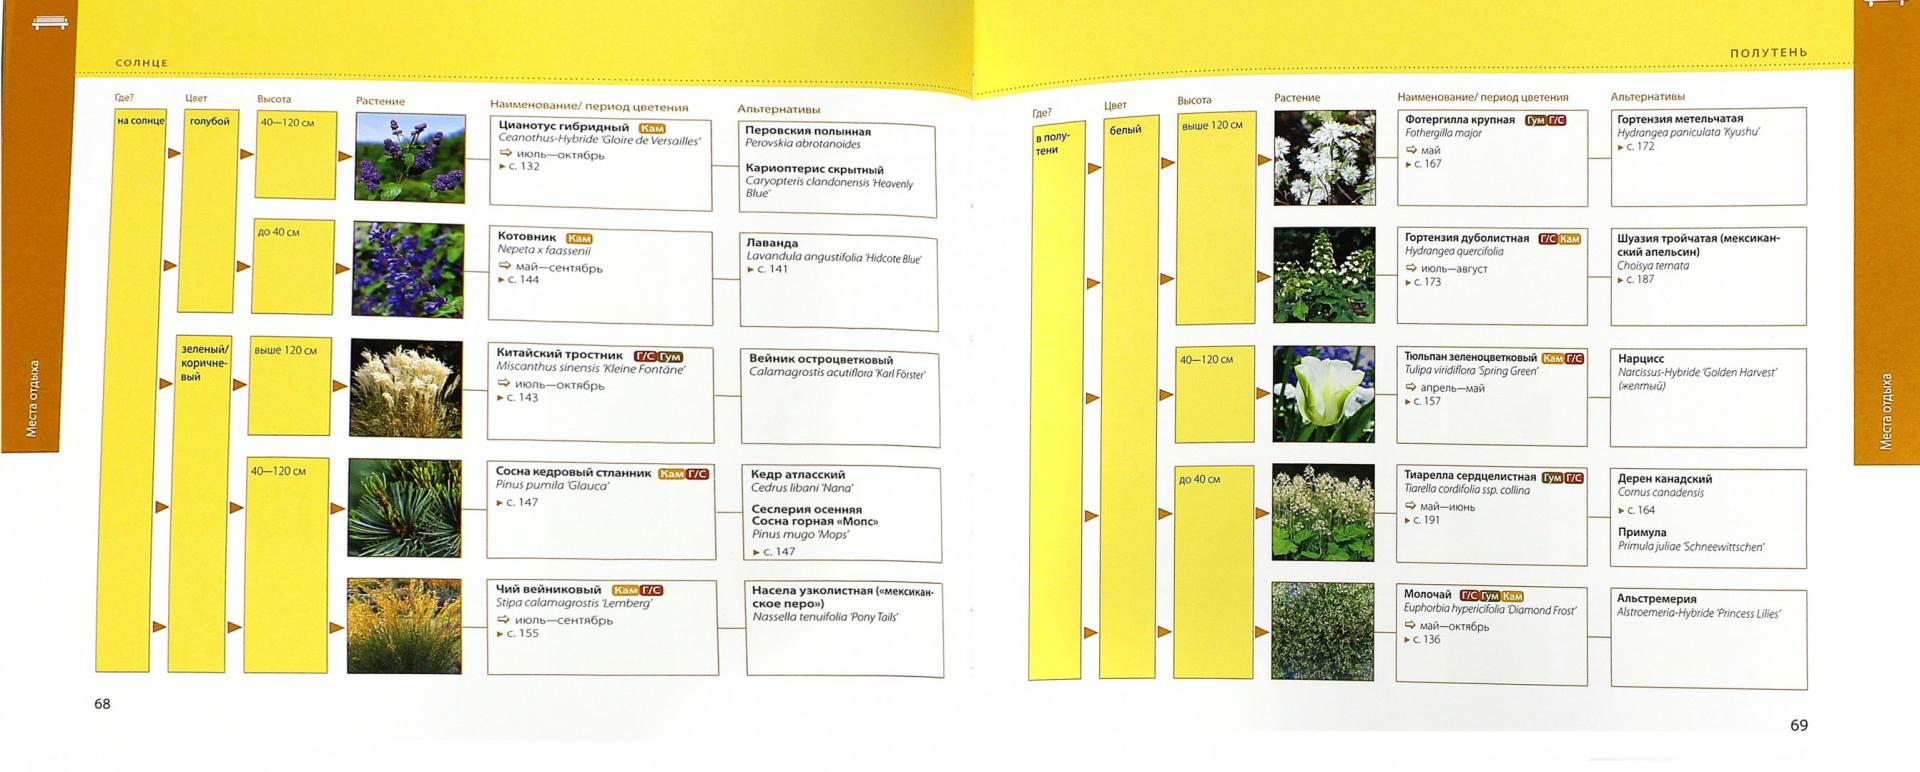 Иллюстрация 1 из 21 для Справочник растений. Как сажать, ухаживать, сочетать - Элизабет Флехаус | Лабиринт - книги. Источник: Лабиринт